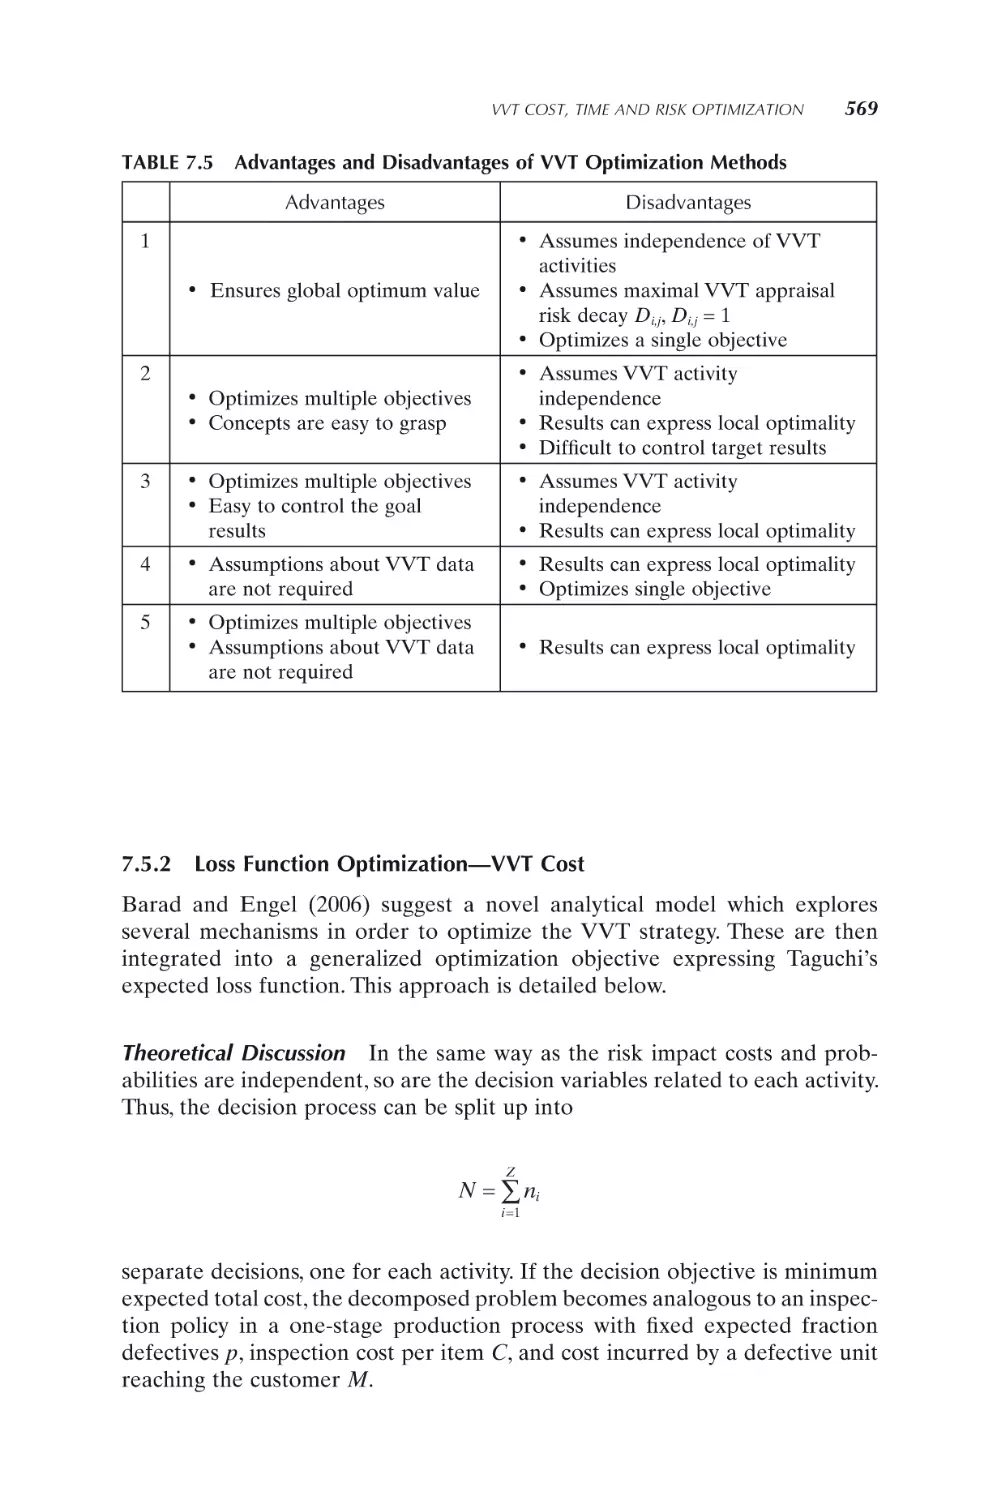 7.5.2 Loss Function Optimization—VVT Cost